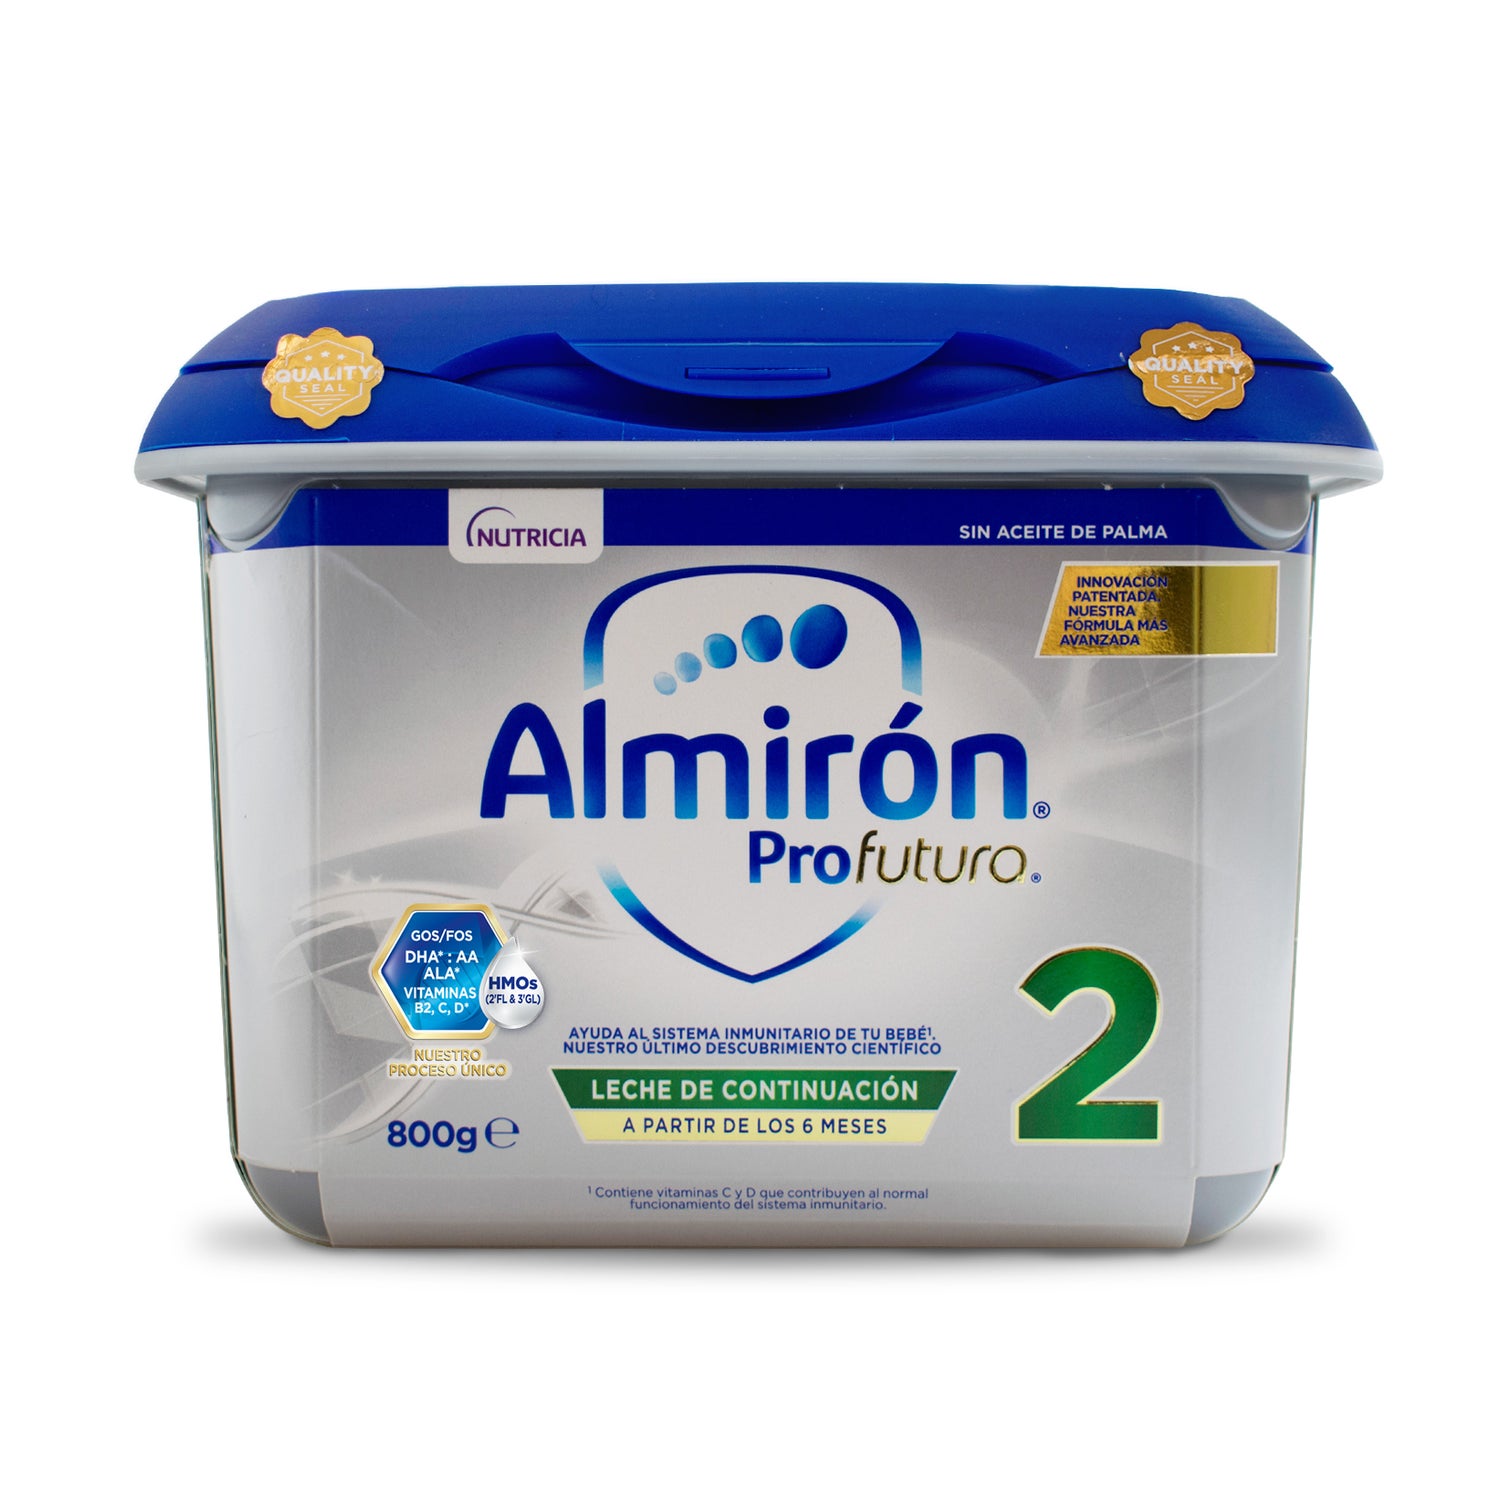 Almirón Profutura Duobiotik 2 - Almirón